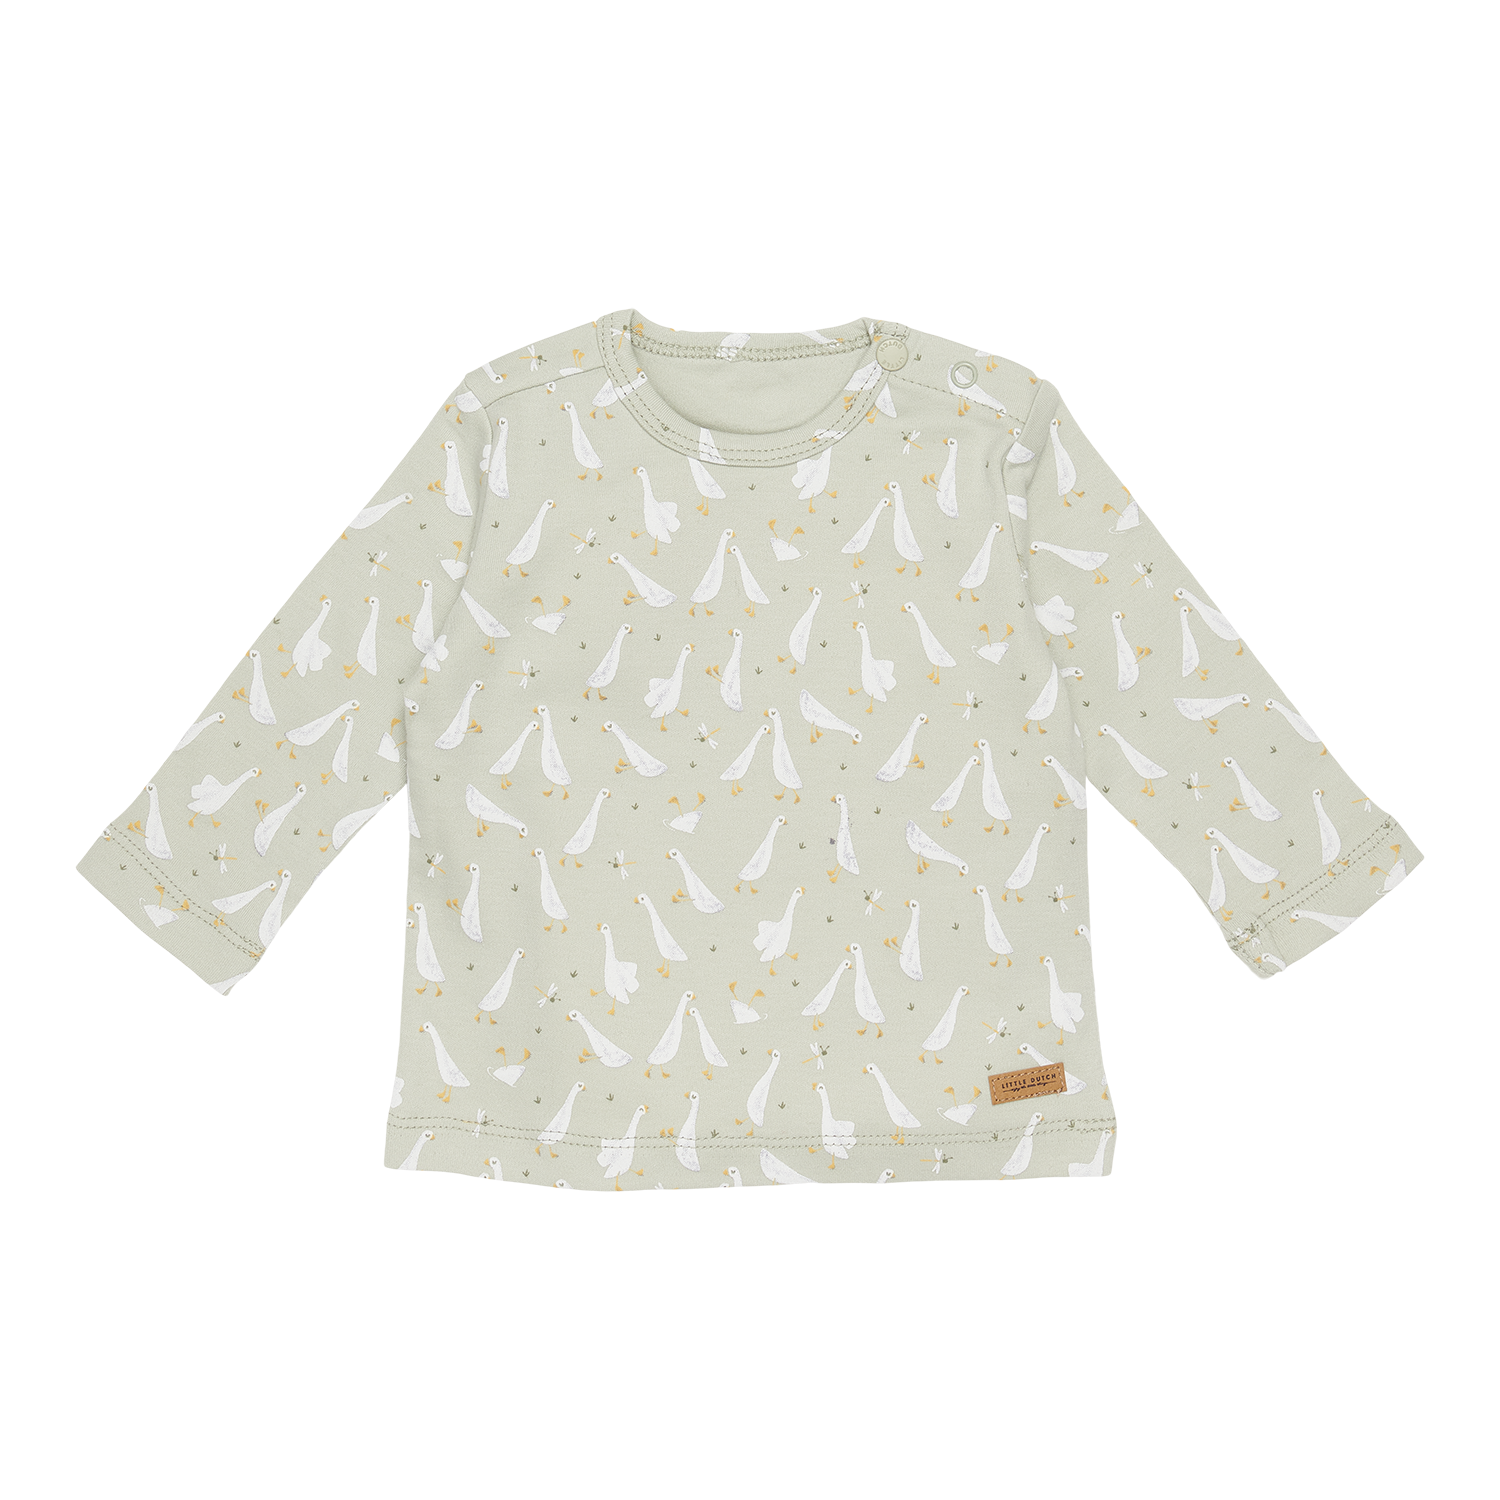 Long Sleeve Shirt / Langarmshirt Little Goose / Kleine Gans mint (Gr. 80)